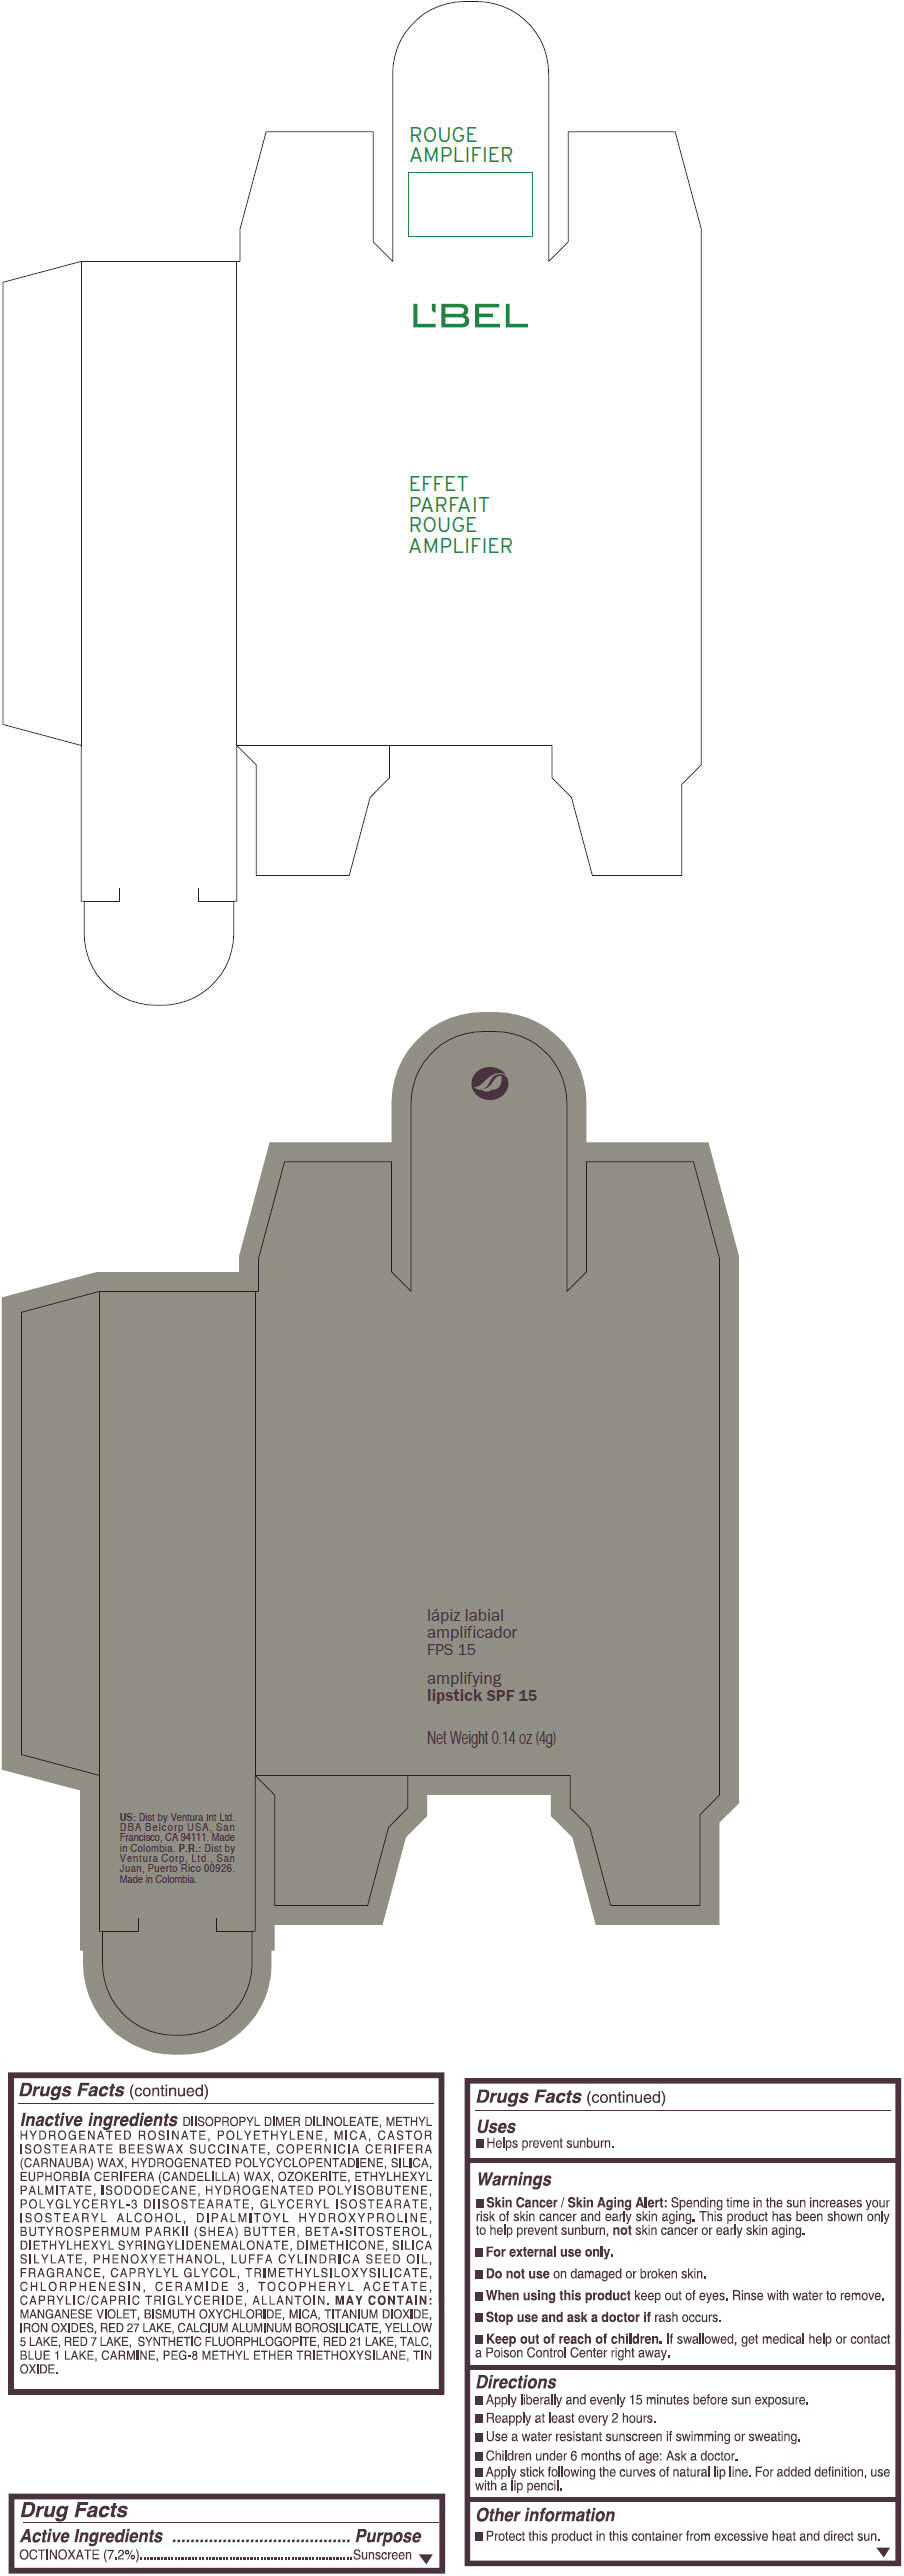 PRINCIPAL DISPLAY PANEL - 4 g Tube Box - (BOURGOGNE VIF) - PINK